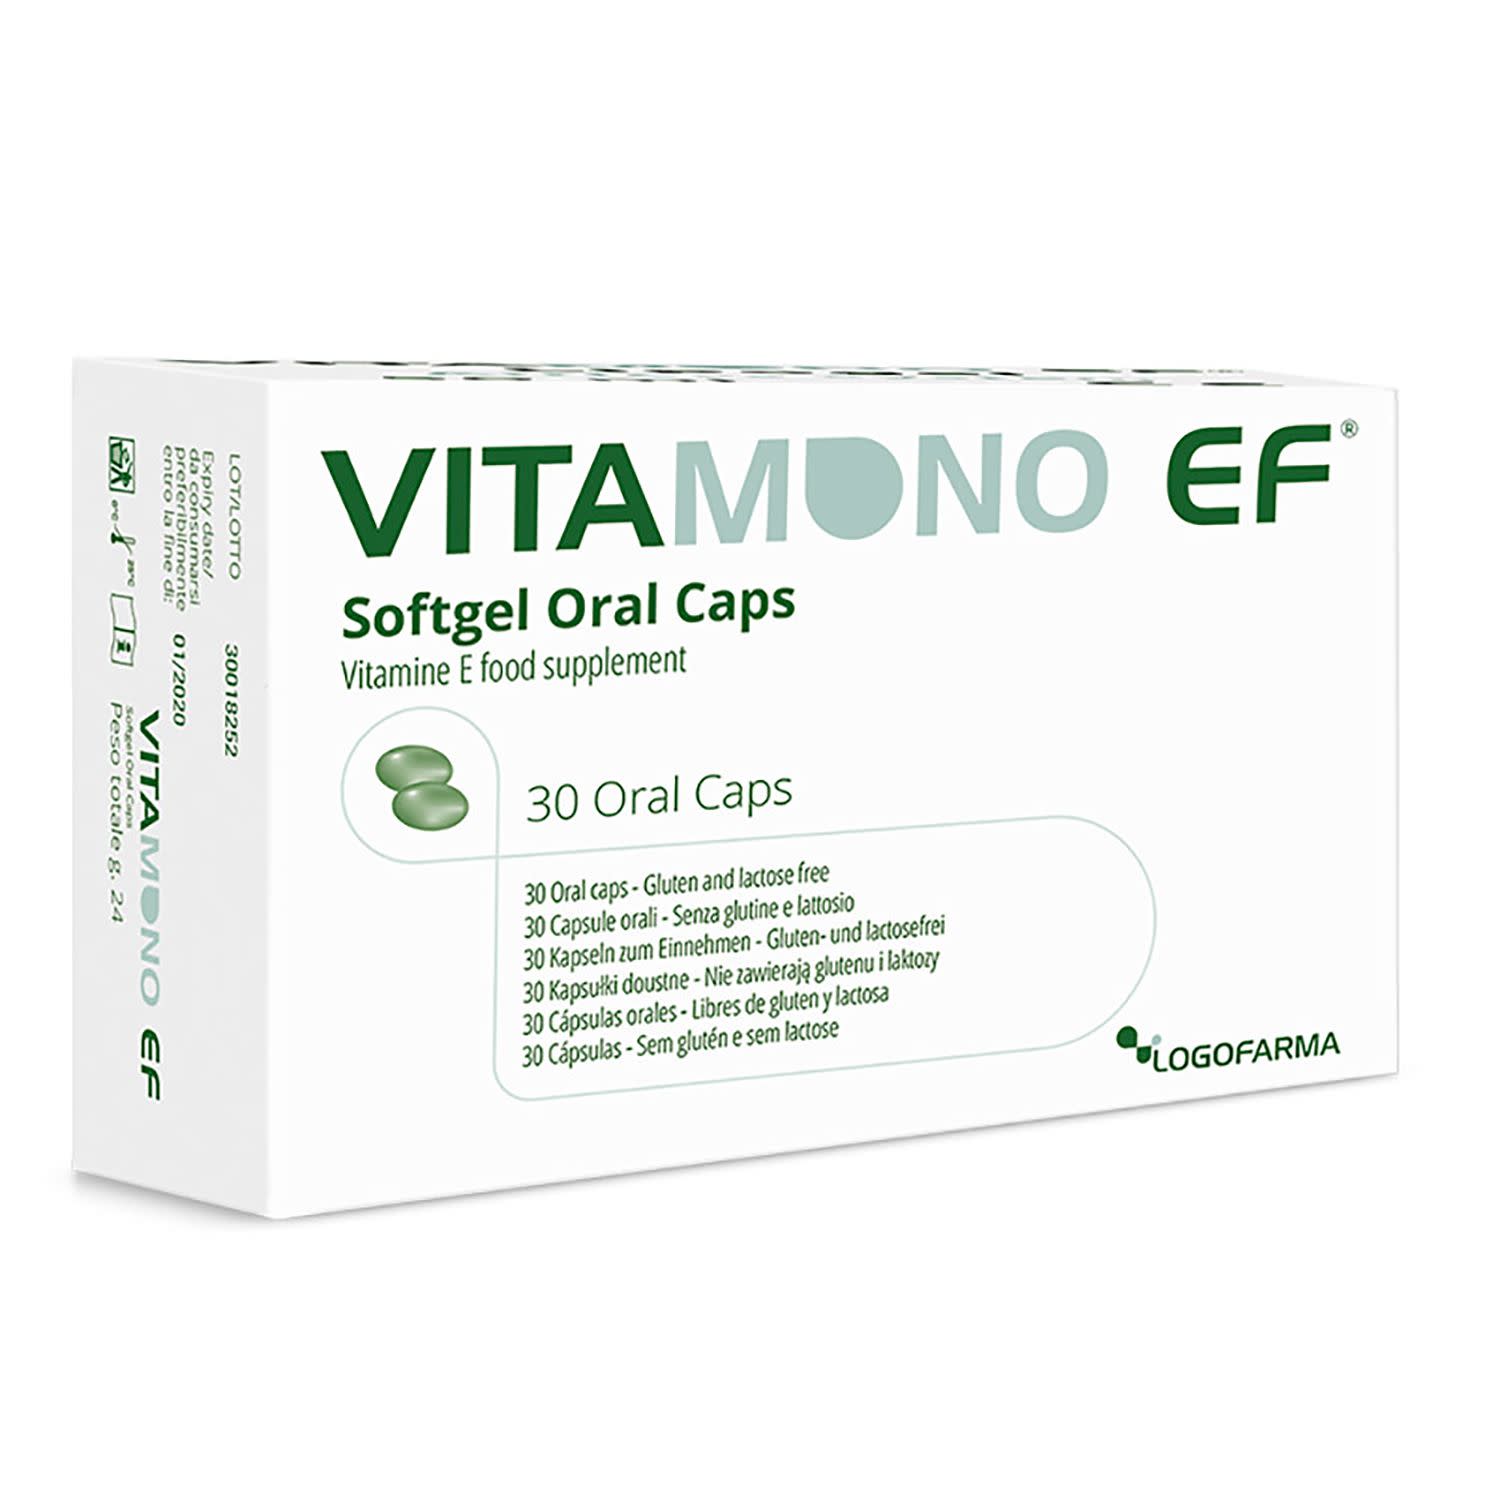 927120283 - Vitamono EF Capsule orali 30 capsule - 4721339_3.jpg